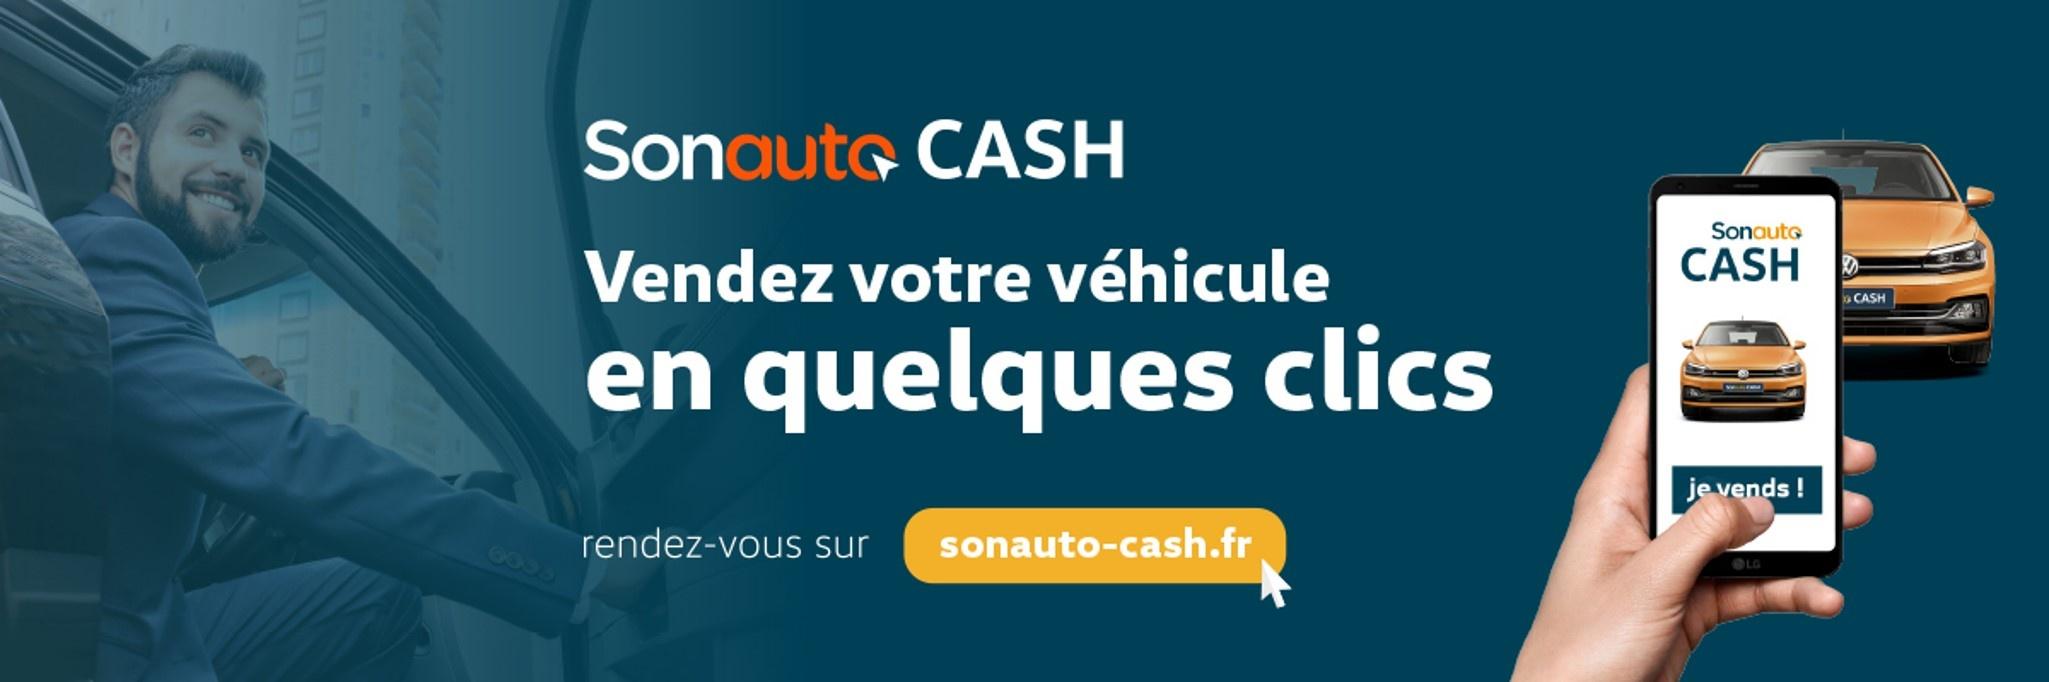 Cupra nice - Vendez votre véhicule en quelques clics avec Sonauto Cash